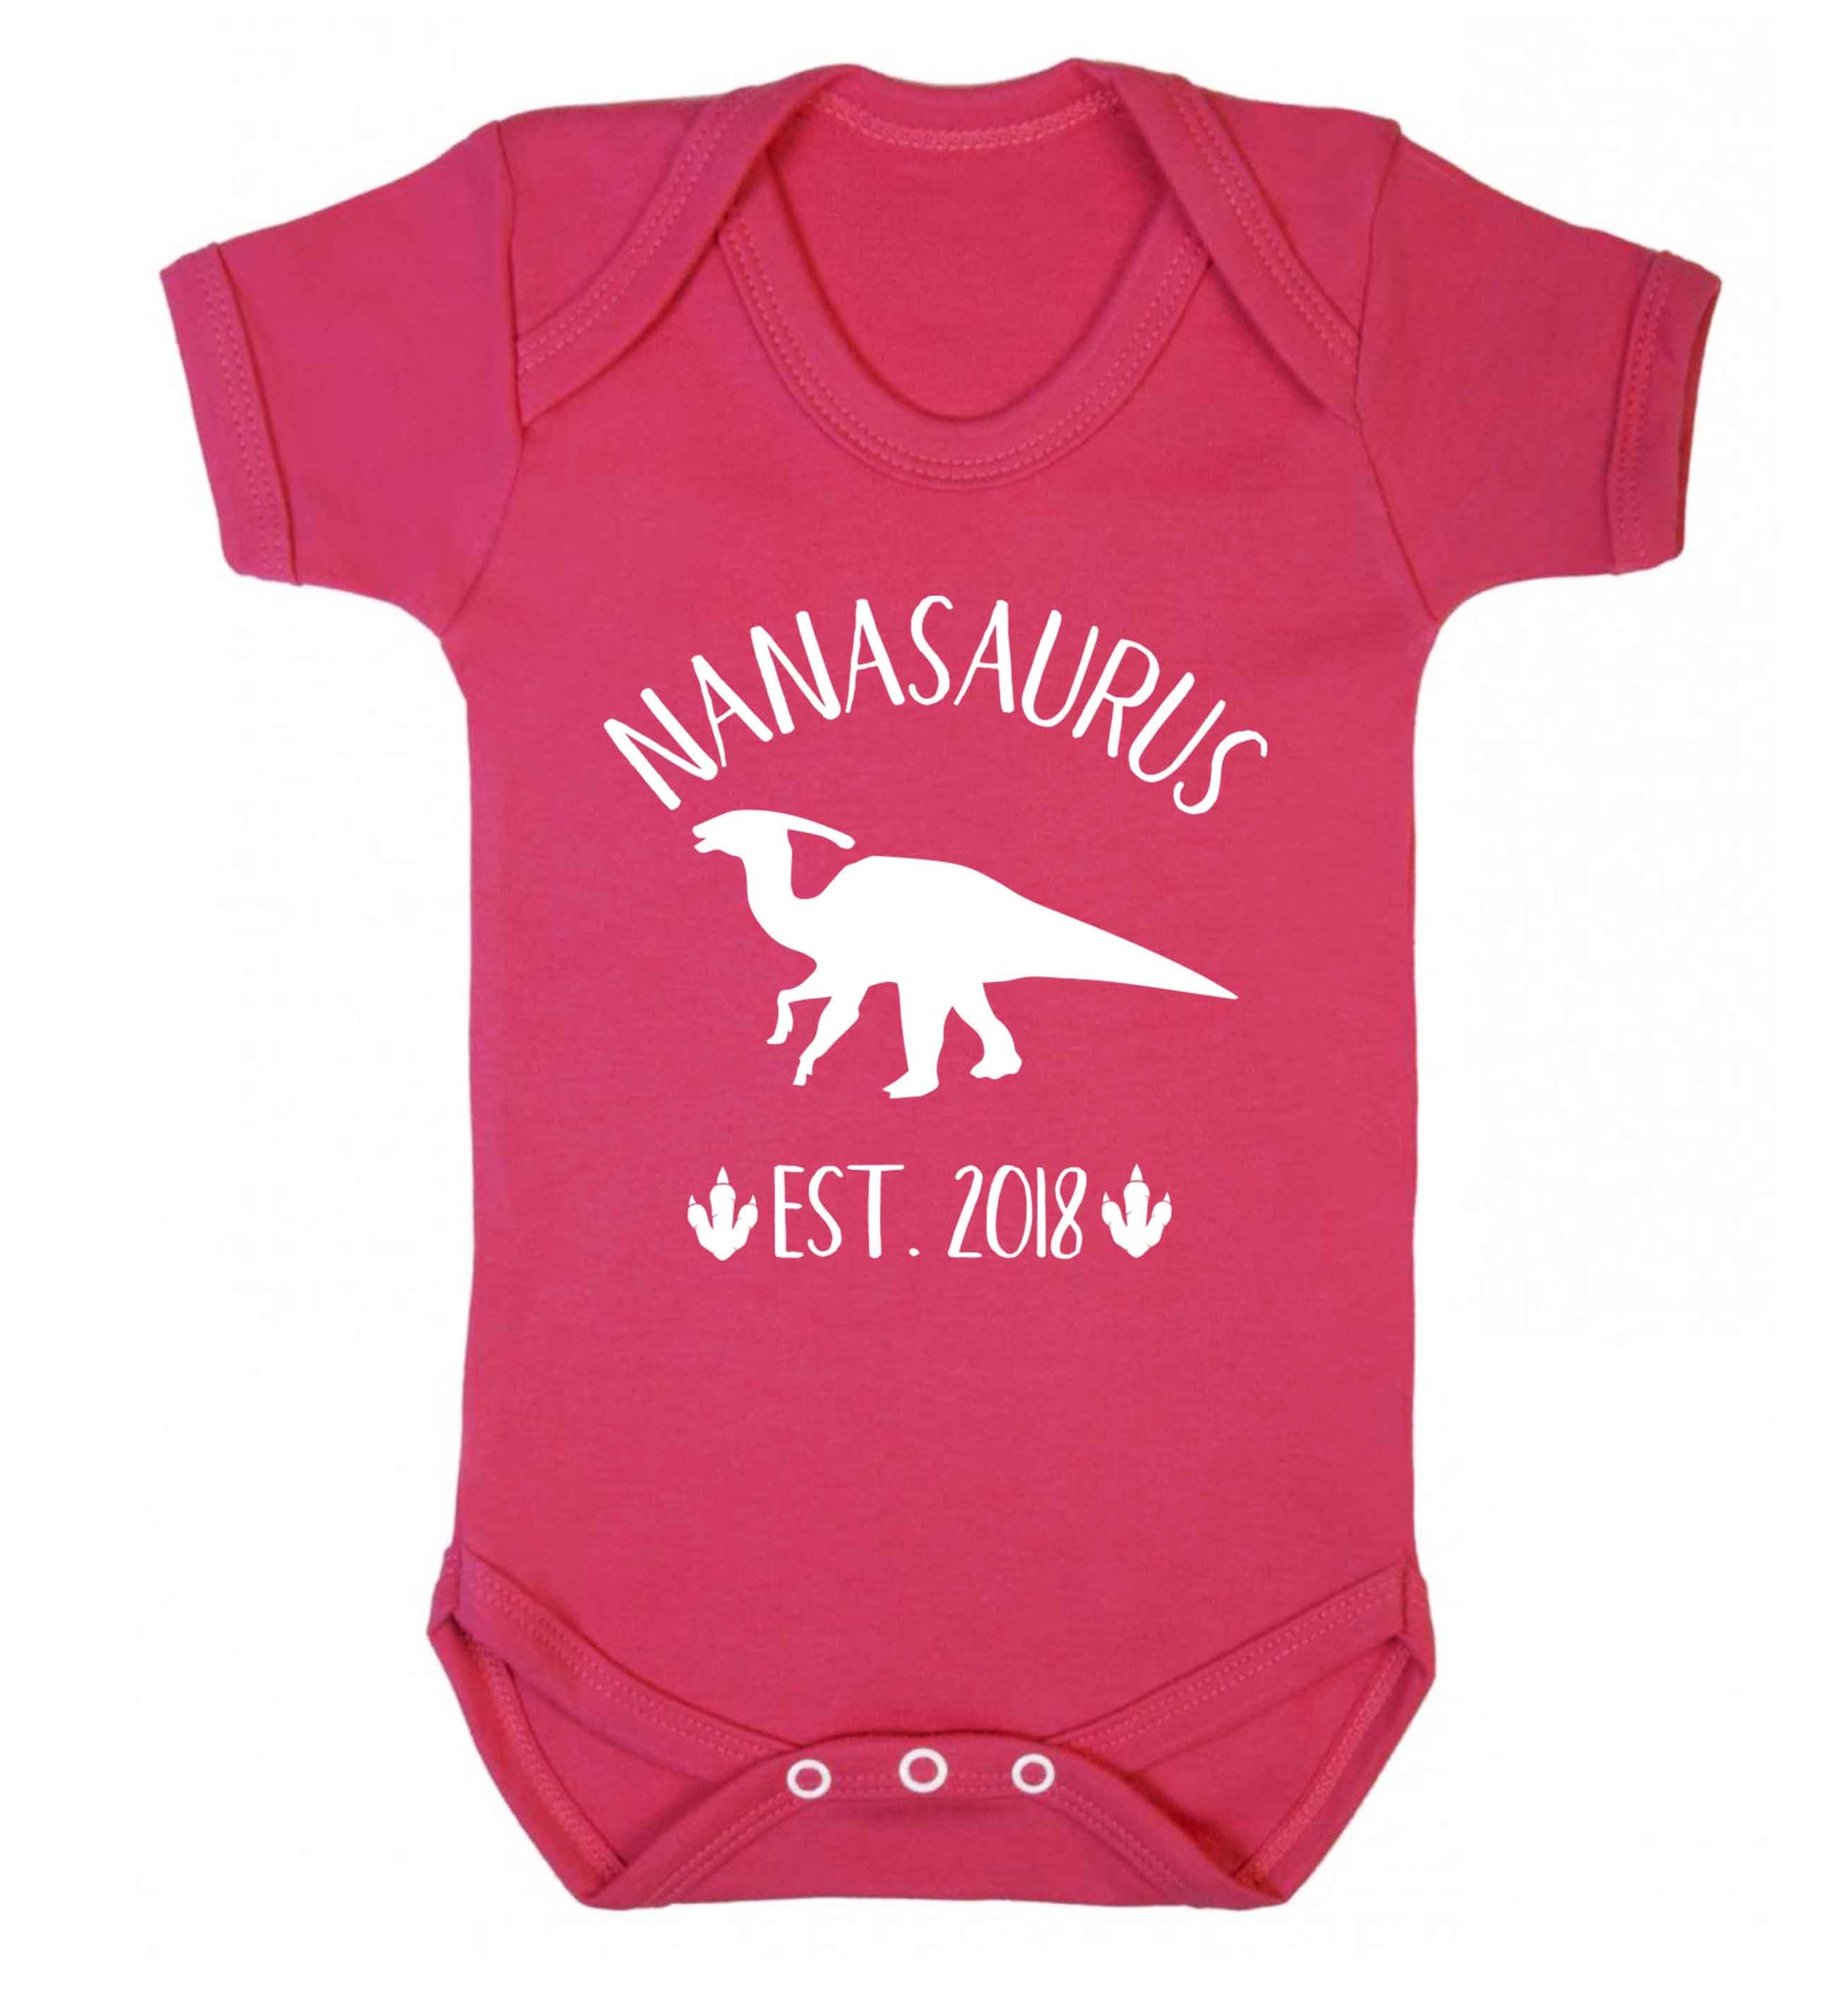 Personalised nanasaurus since (custom date) Baby Vest dark pink 18-24 months